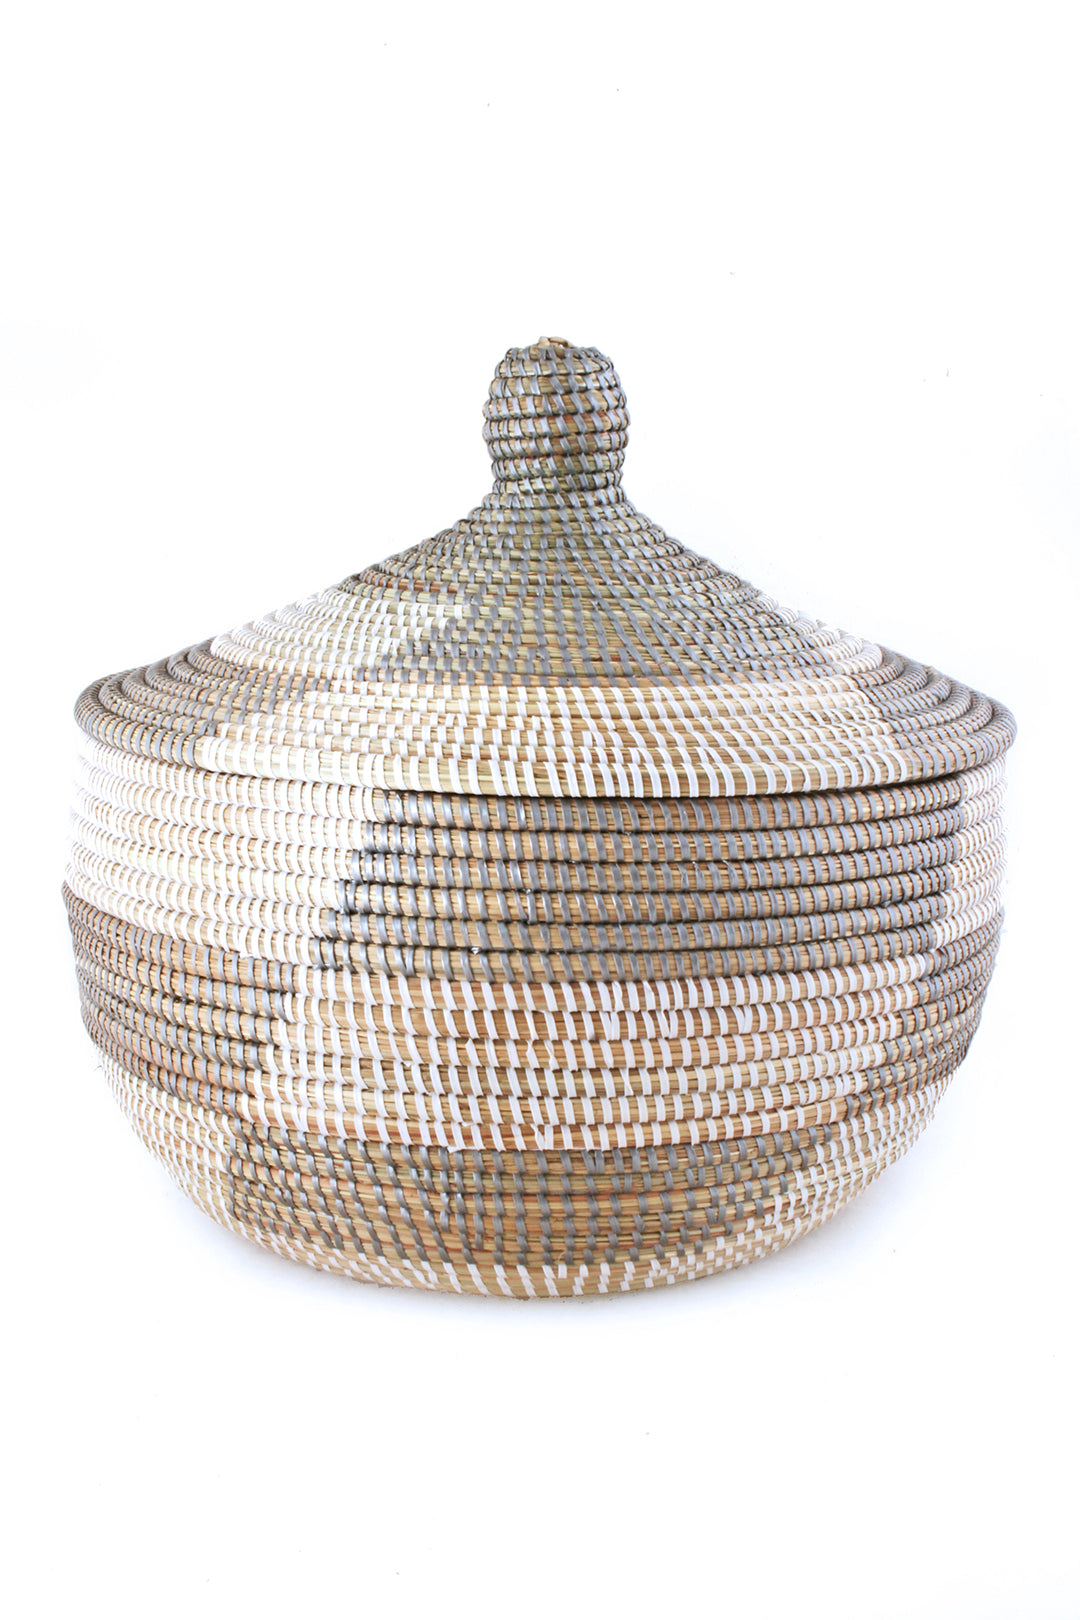 Silver African Lidded Storage Basket Default Title